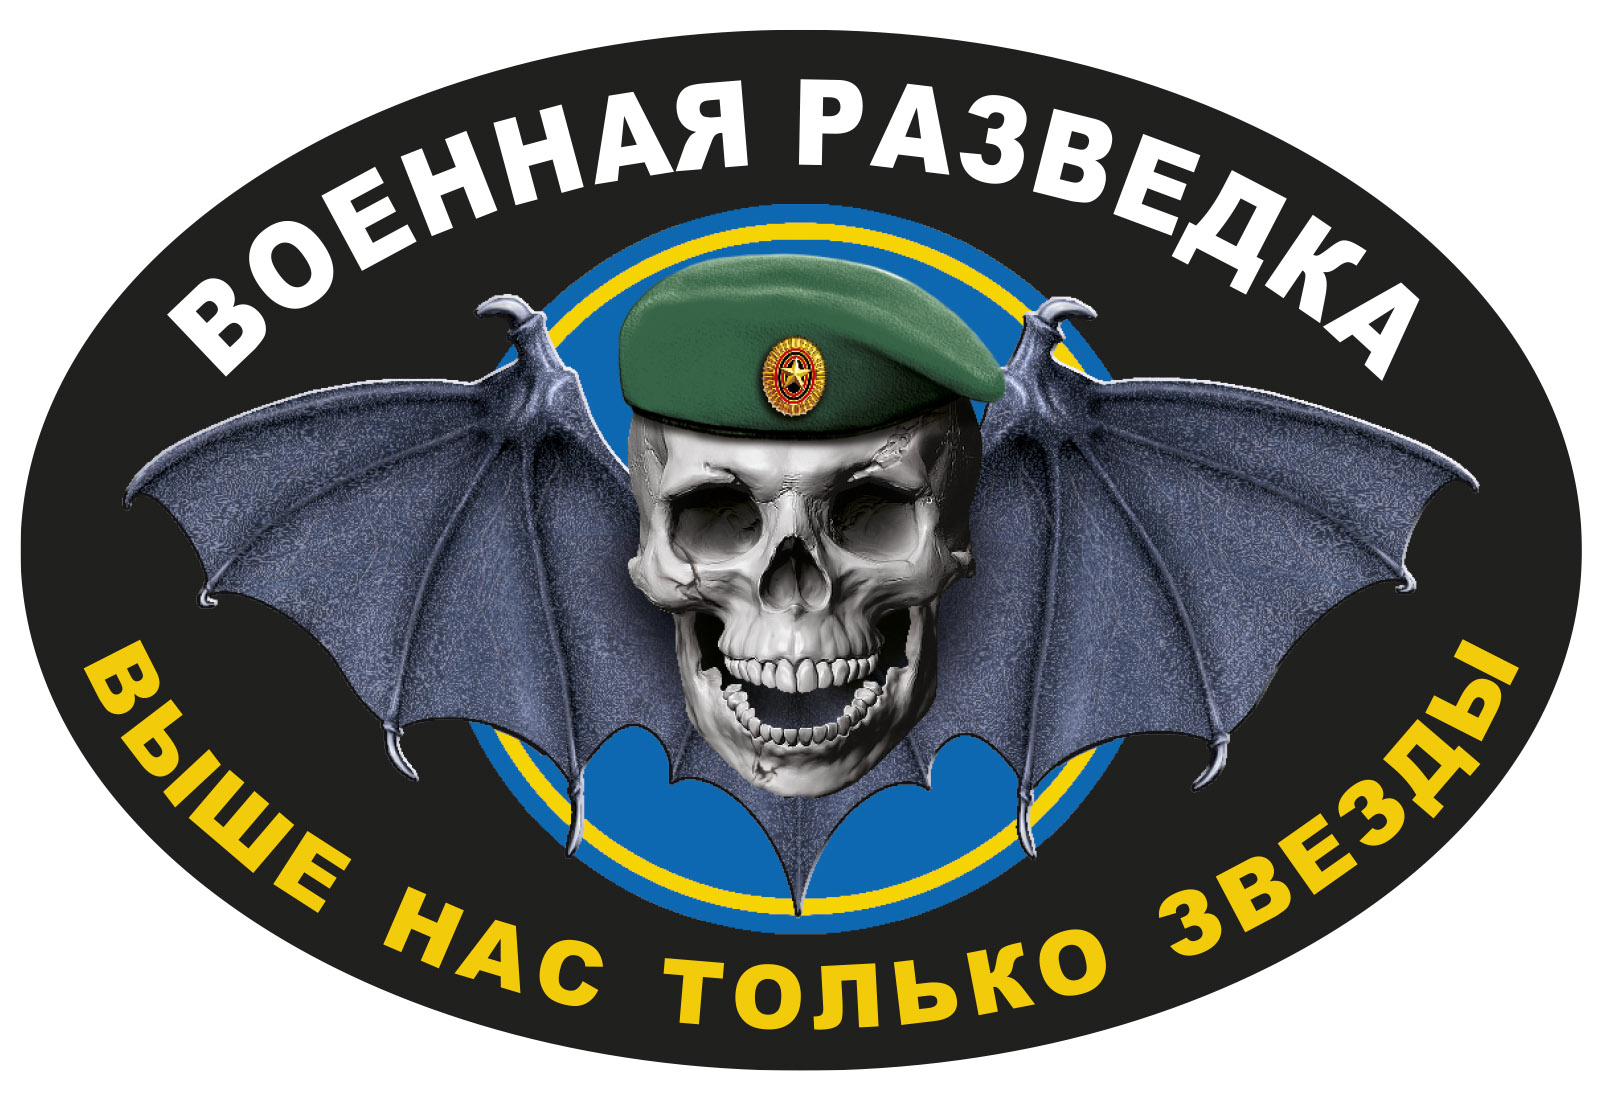 Автомобильная наклейка с символикой Военной разведки